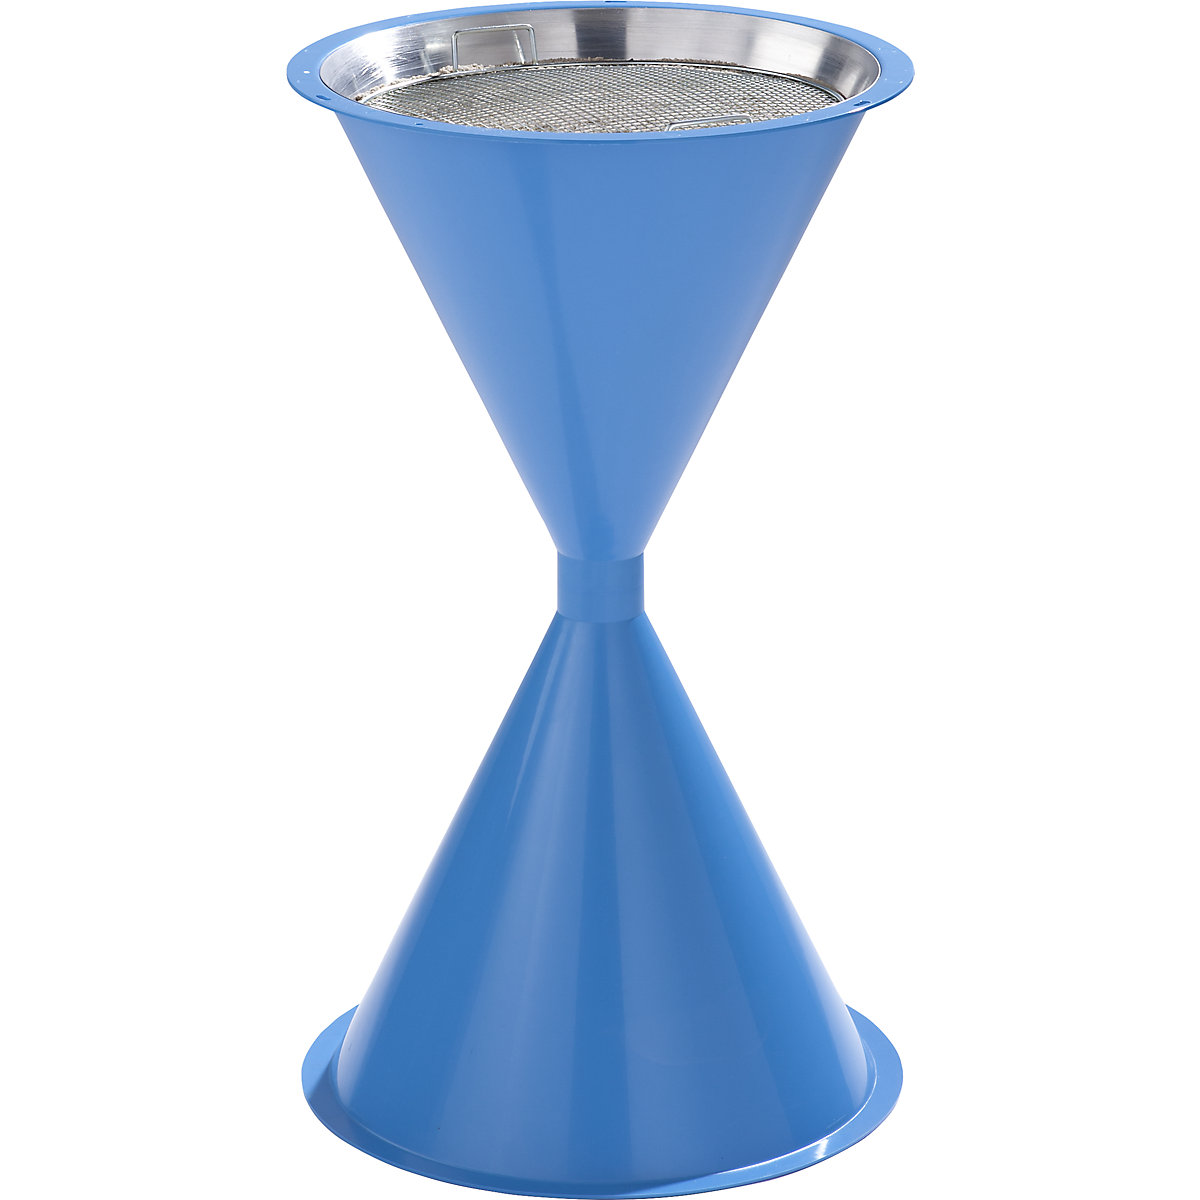 VAR – Cendrier sur pied en forme de quille, en plastique, sans toit, bleu clair